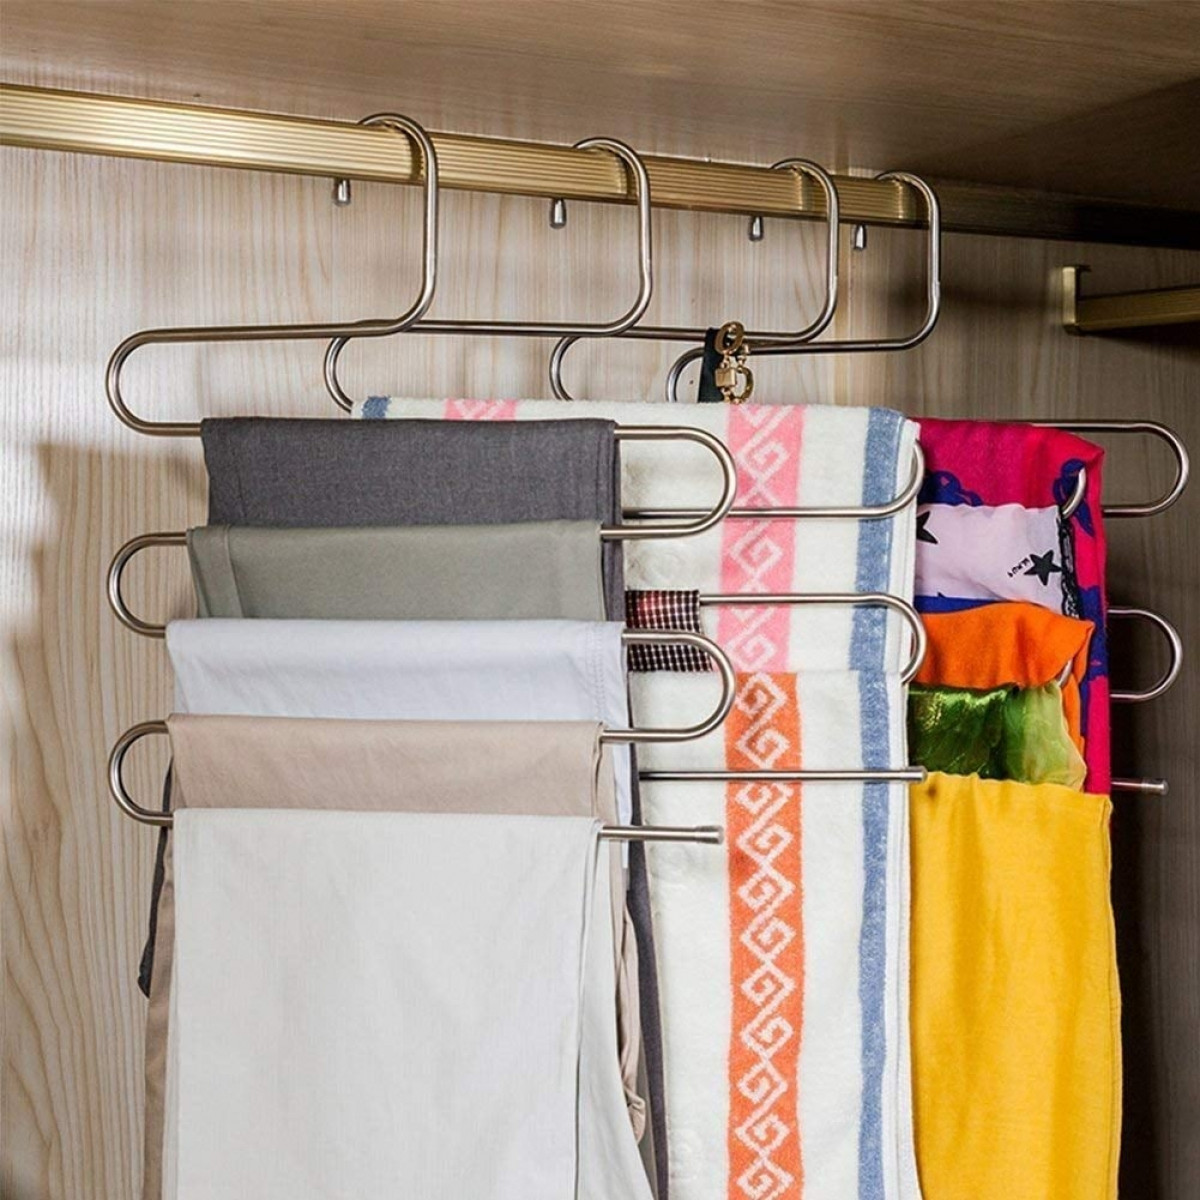 Những chiếc móc uốn cong này rất tiện lợi để bạn có thể treo quần, khăn mà không chiếm quá nhiều diện tích trong tủ quần áo.